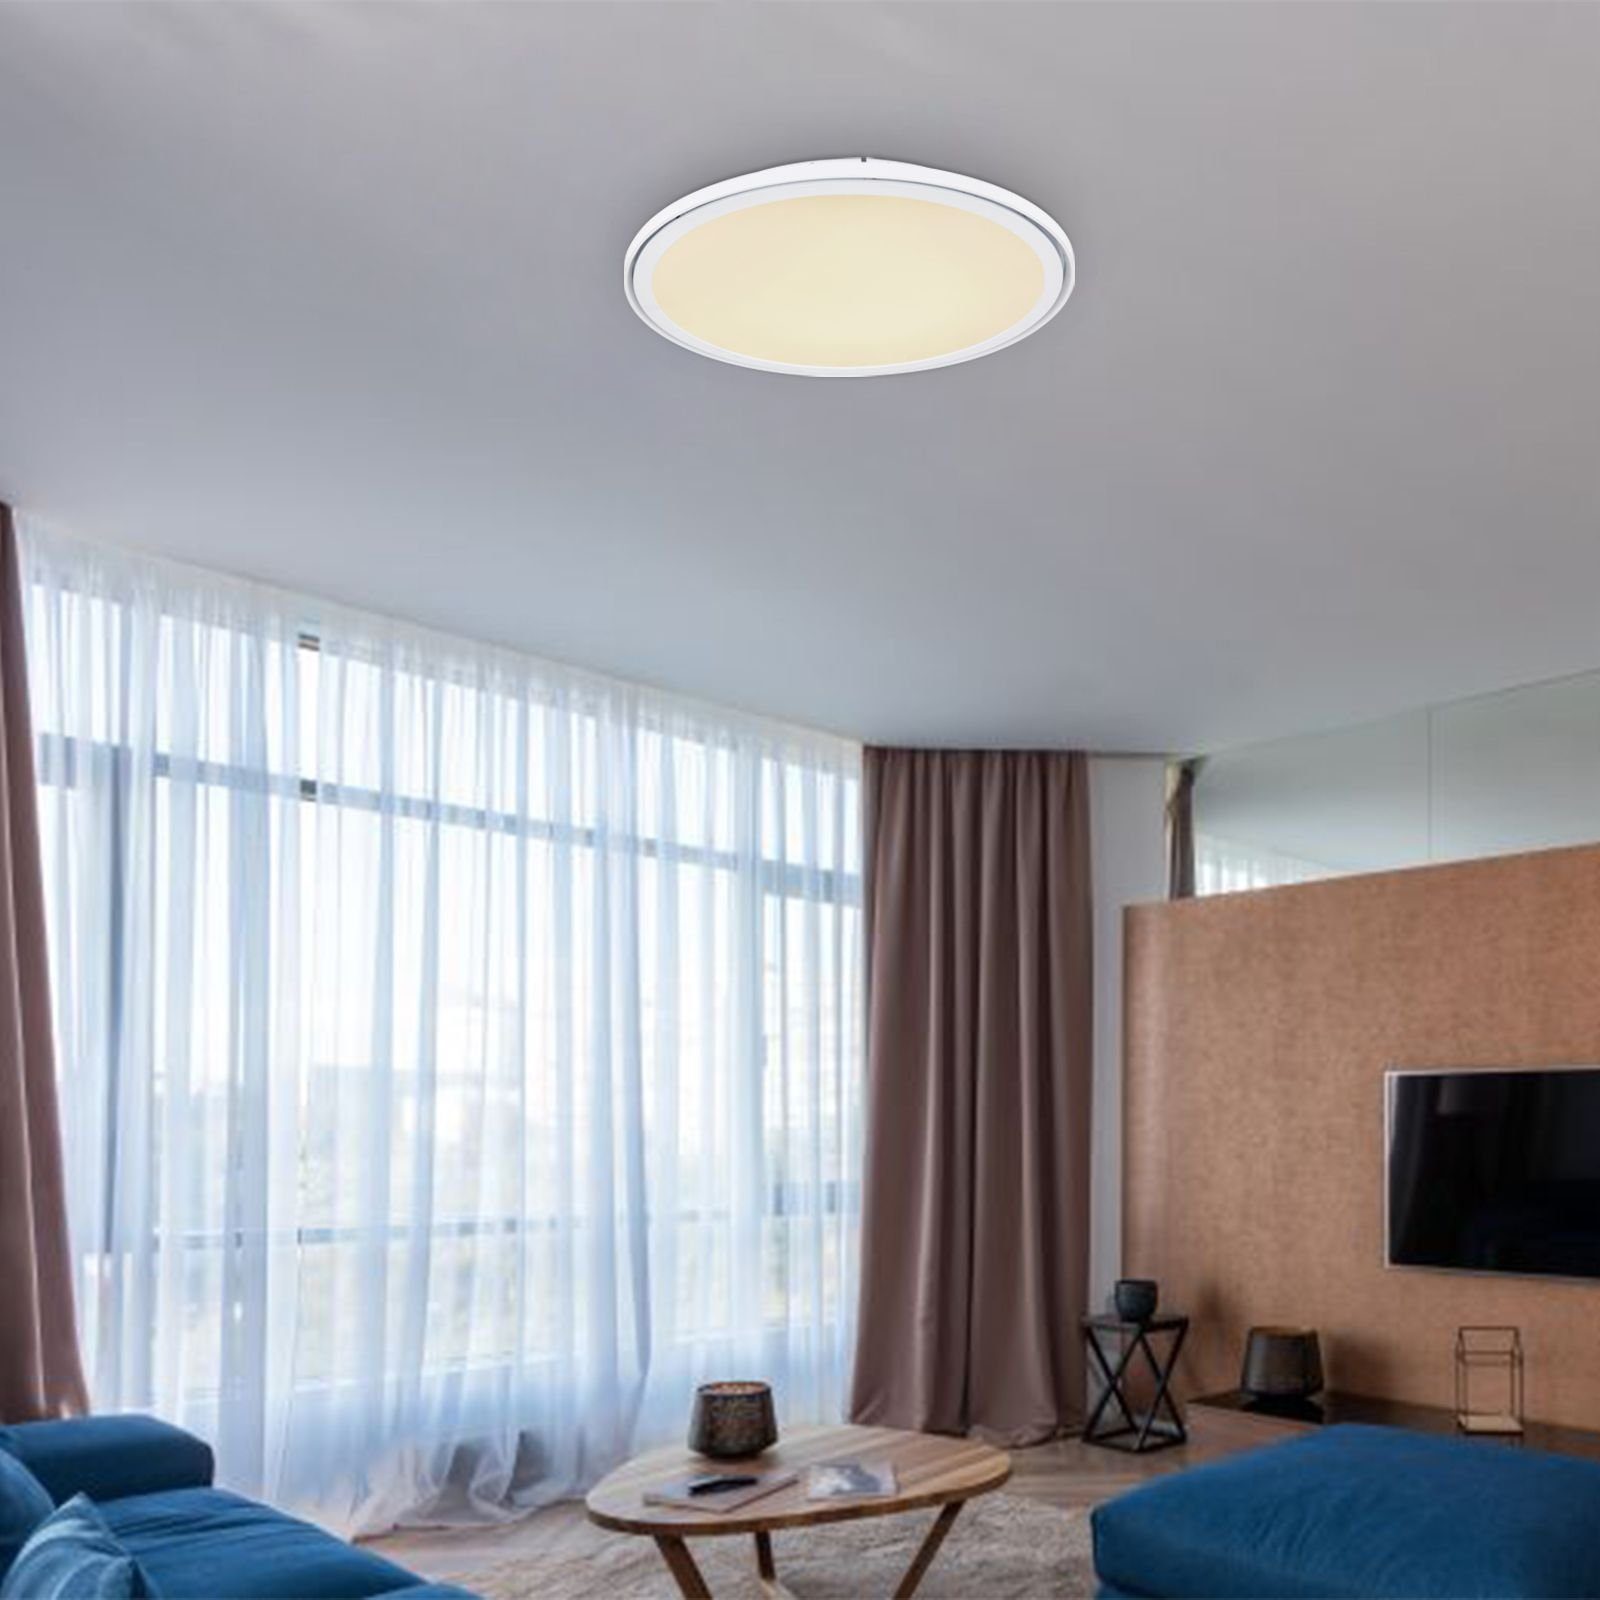 Deckenlampe GLOBO Globo Fernbedienung Deckenleuchte Deckenleuchte Wohnzimmer LED Dimmbar